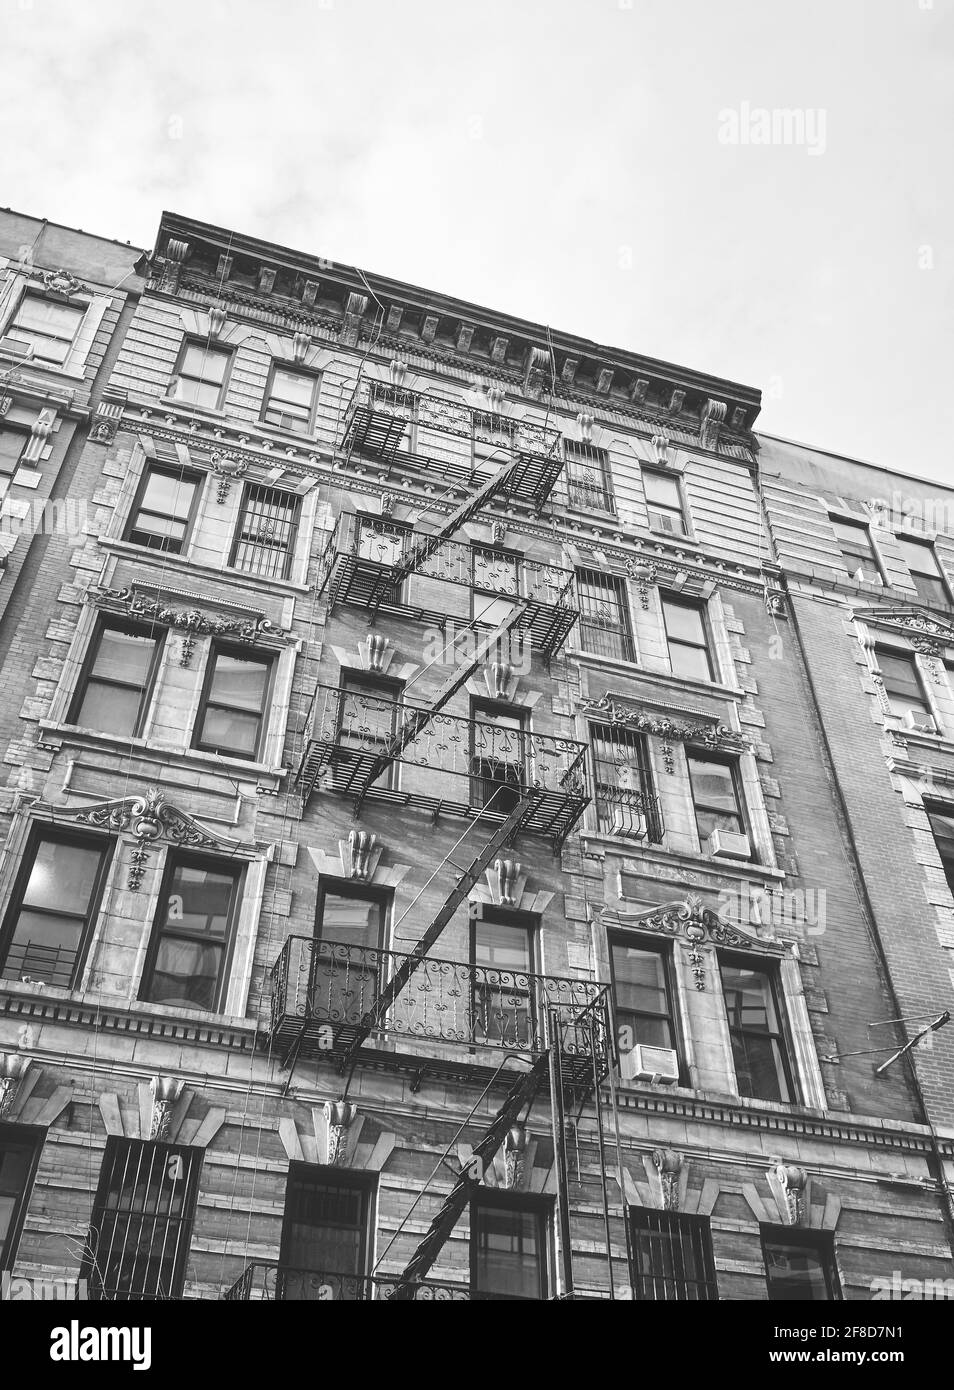 Photo en noir et blanc de l'ancien bâtiment avec évacuation au feu de fer, New York City, Etats-Unis. Banque D'Images